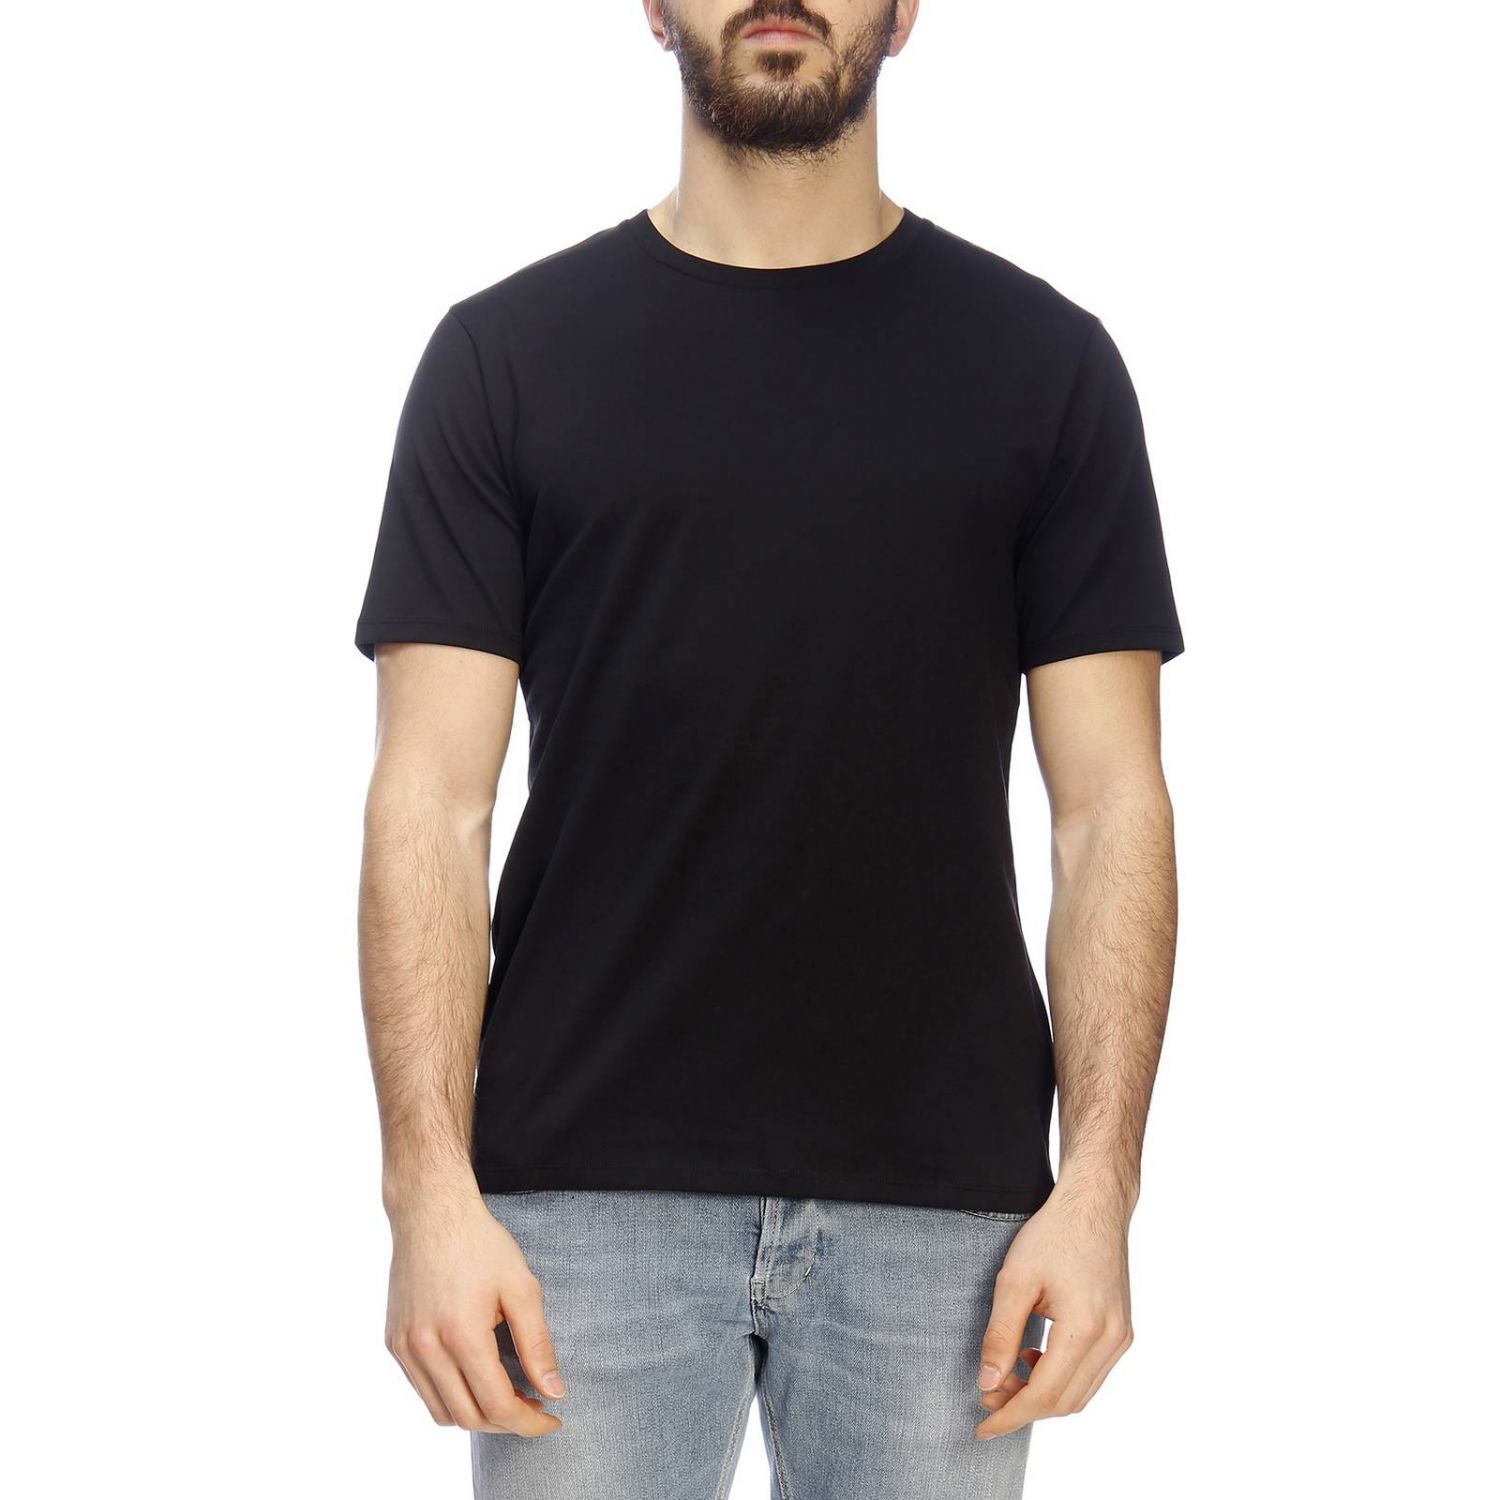 Acne Studios Outlet: T-shirt men | T-Shirt Acne Studios Men Black | T ...